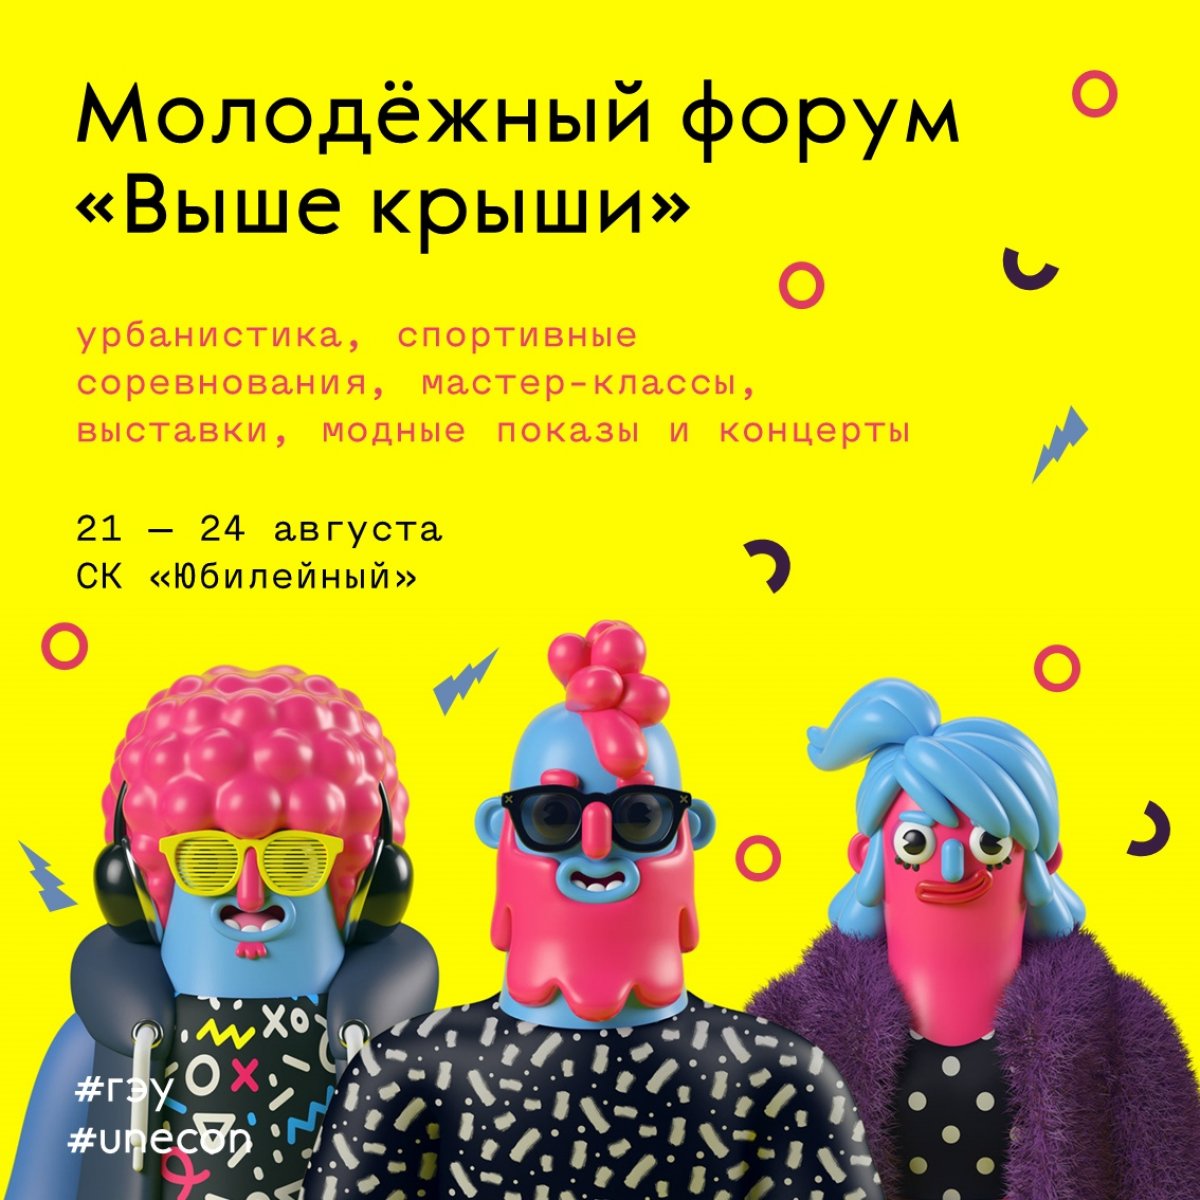 С 21 по 24 августа в СК «Юбилейный» пройдет Всероссийский молодежный гражданский образовательный форум «Выше крыши», который станет местом притяжения активной молодежи со всей России.